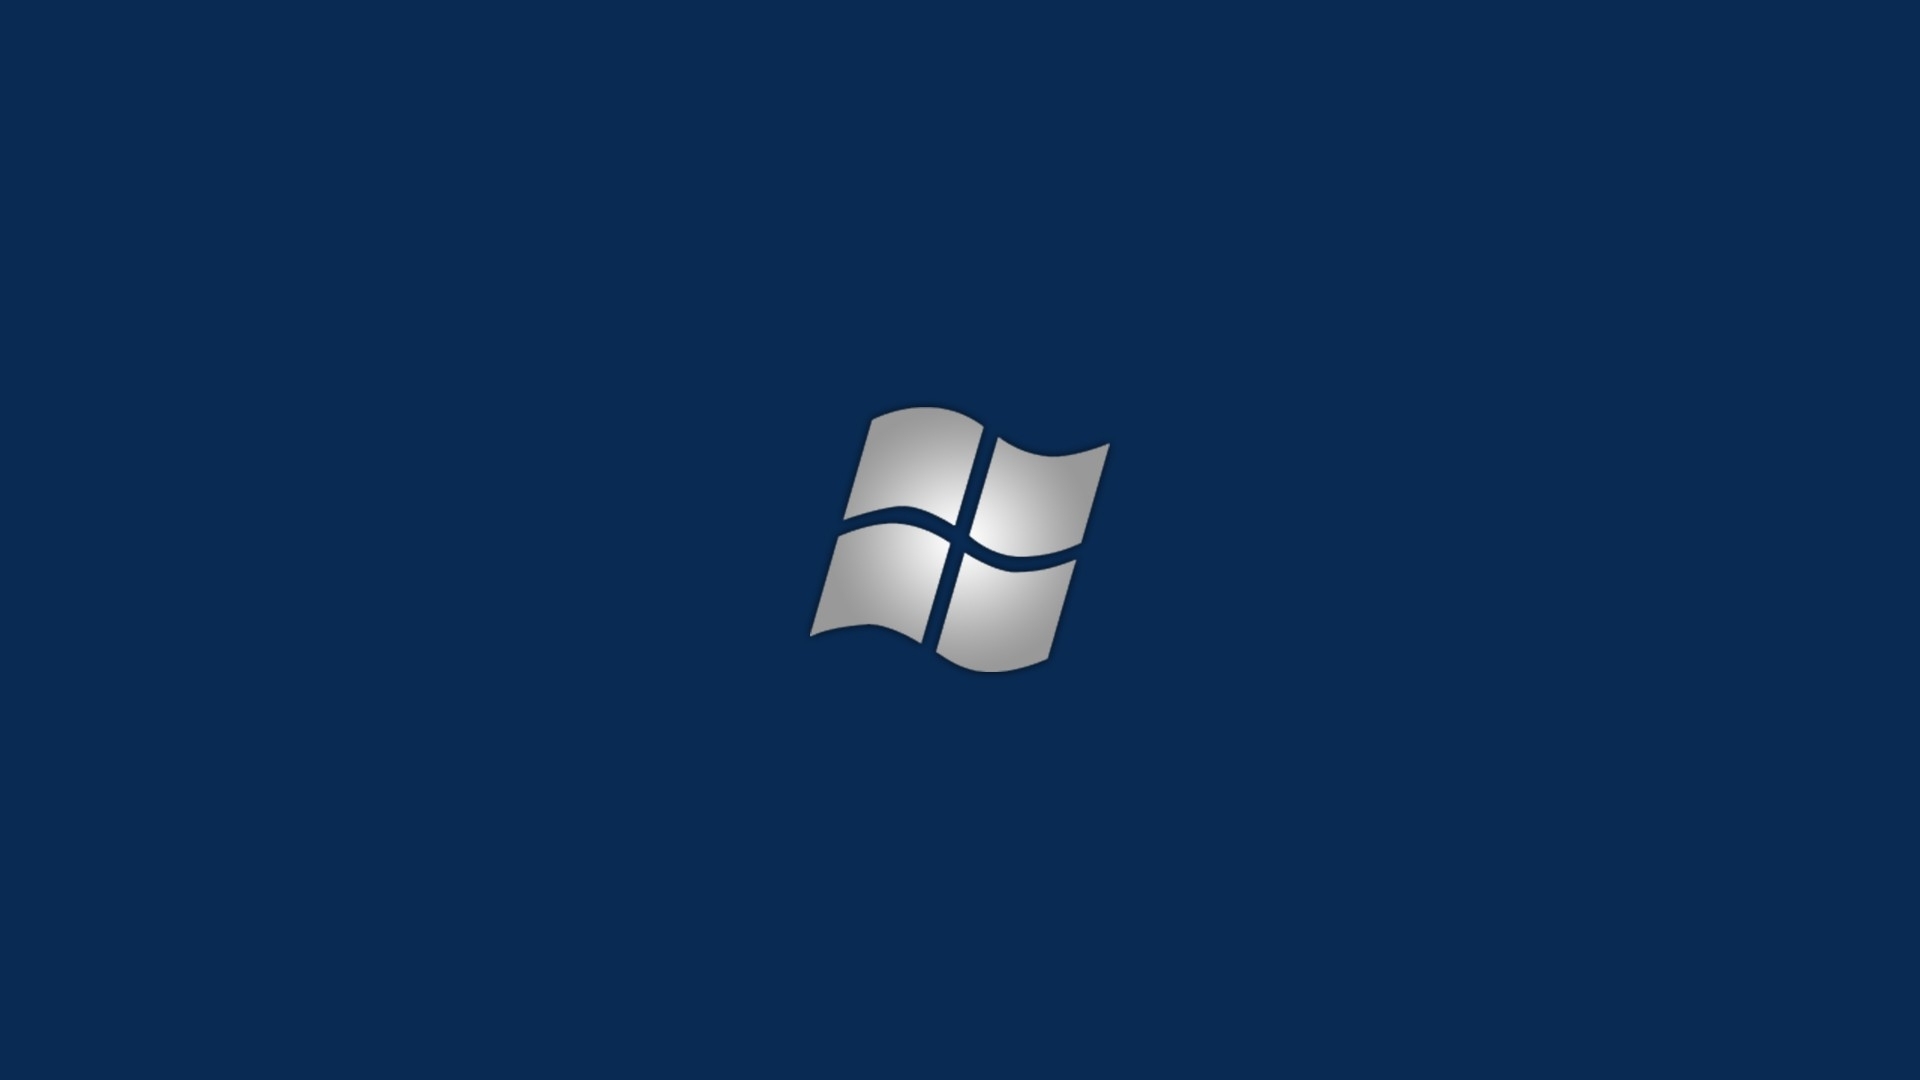 Windows Xp Microsoft Wallpaper